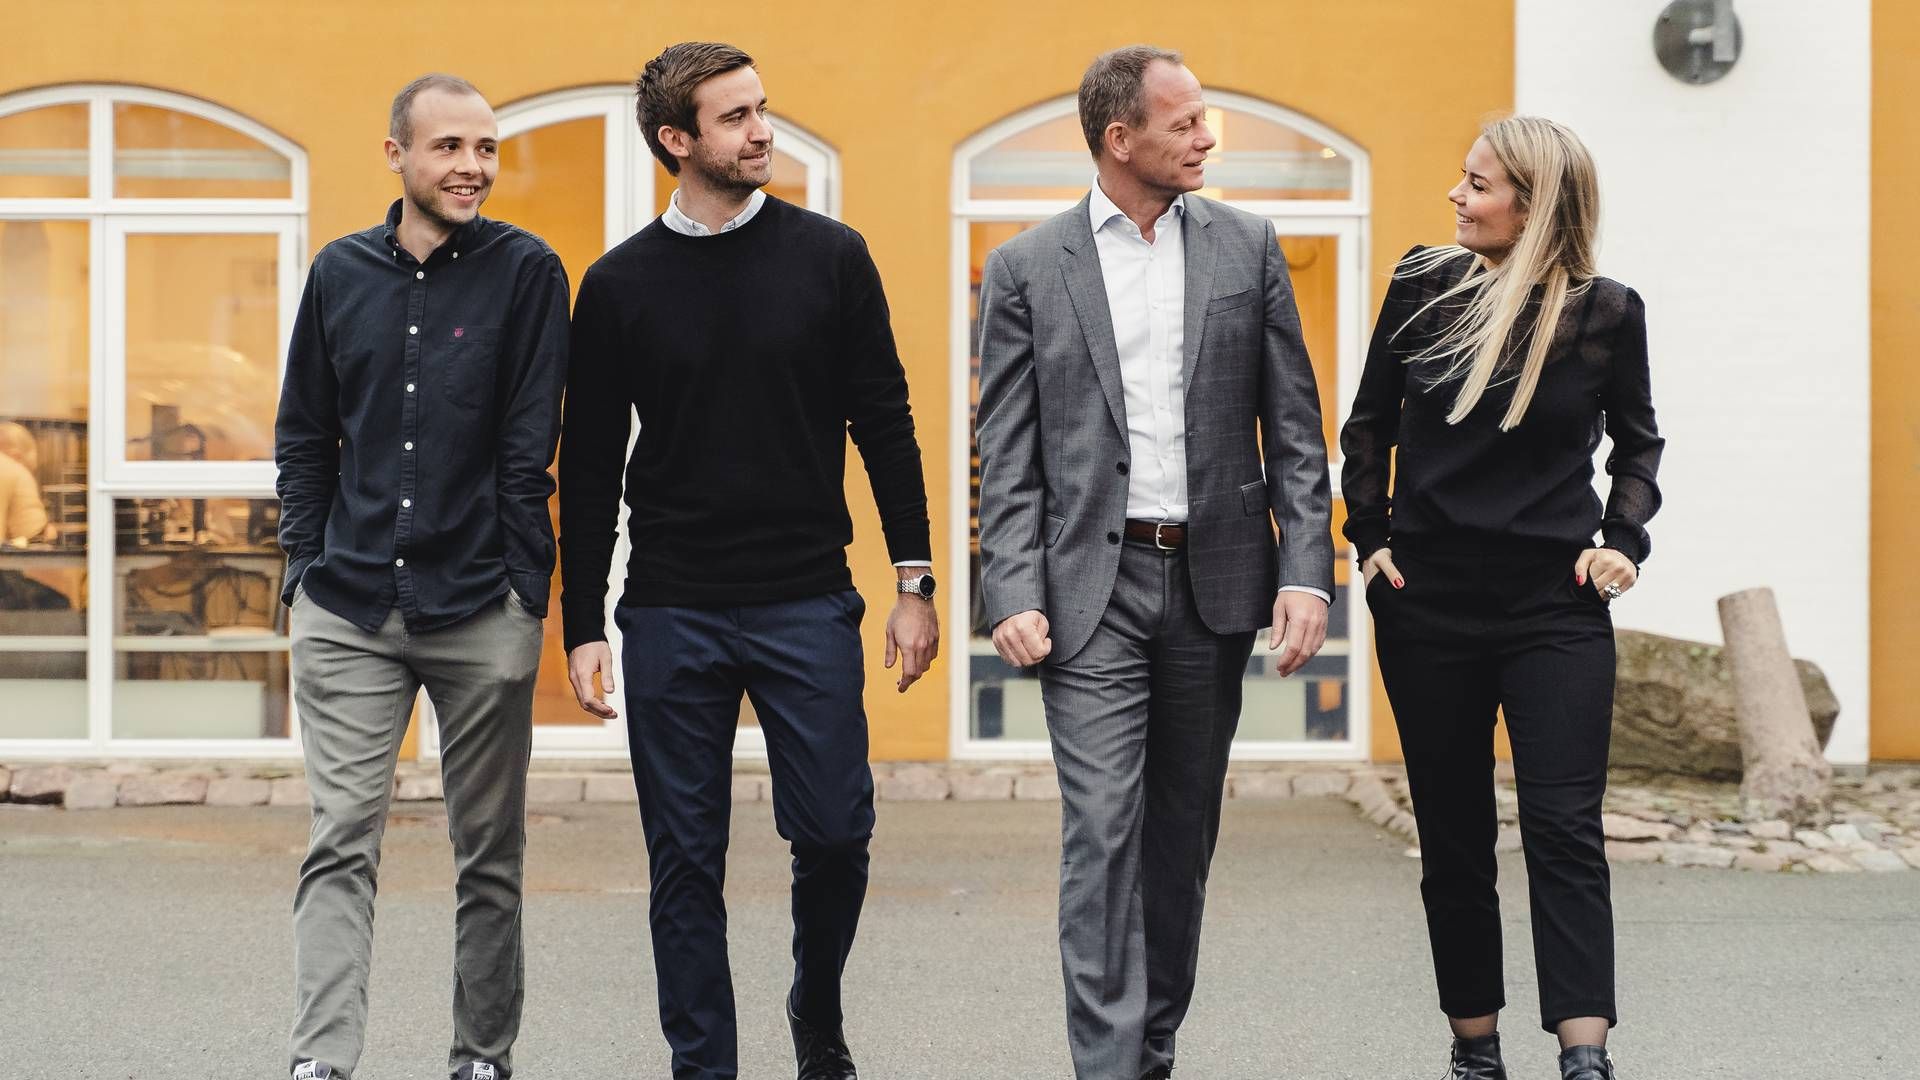 Frameo er stiftet af (fra venstre) Nikolaj Schmidt, Kasper Borup Graversen, Torben Ulrich og Emilie Christiansen. | Foto: Pressefoto